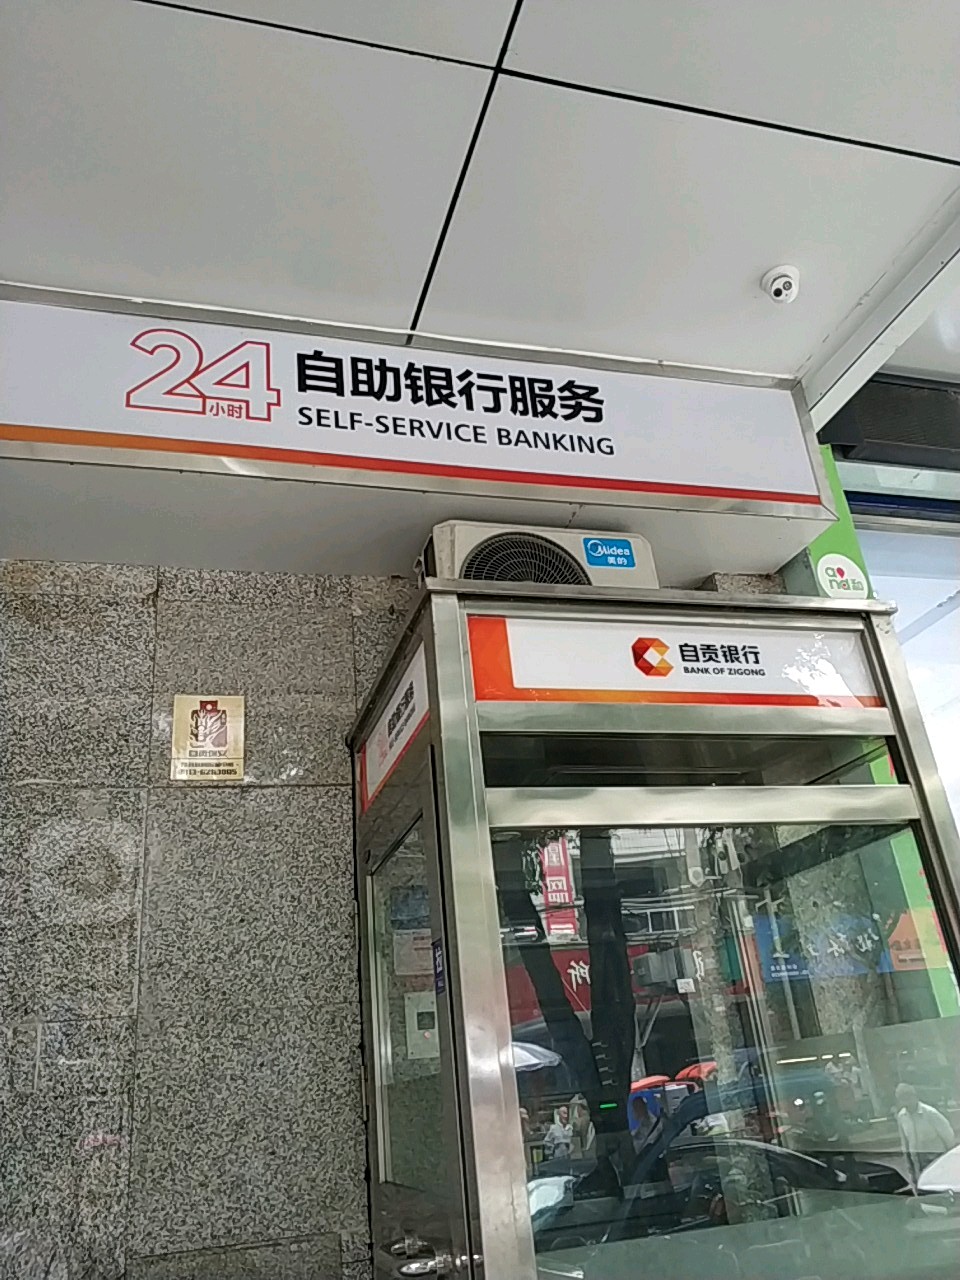 自貢商業銀行24小時自助銀行服務(桂林街支行)